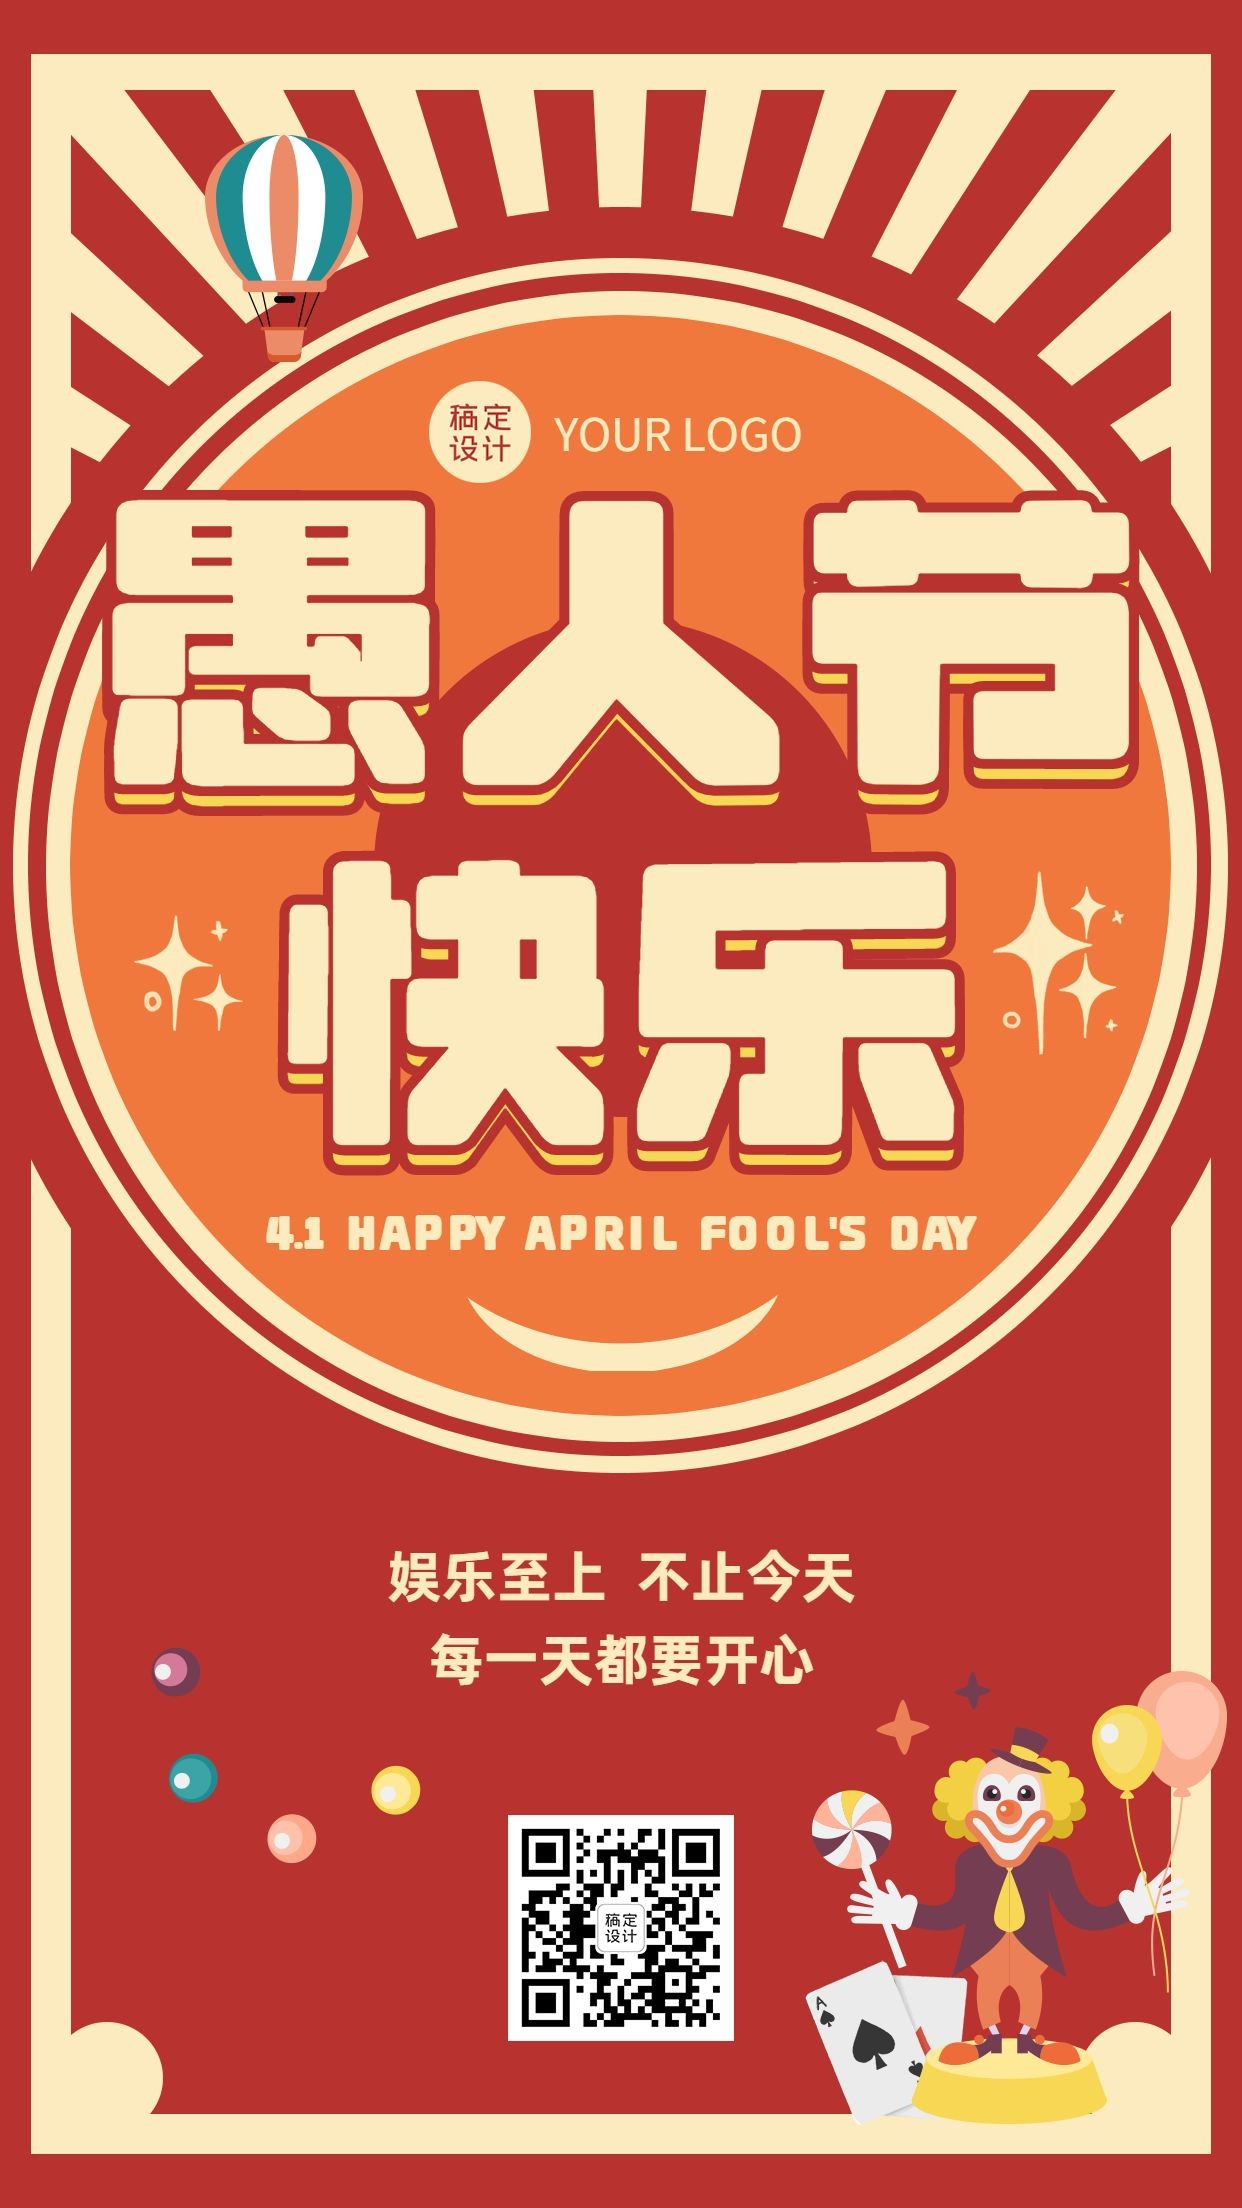 愚人节节日祝福宣传排版手机海报_图片模板素材-稿定设计